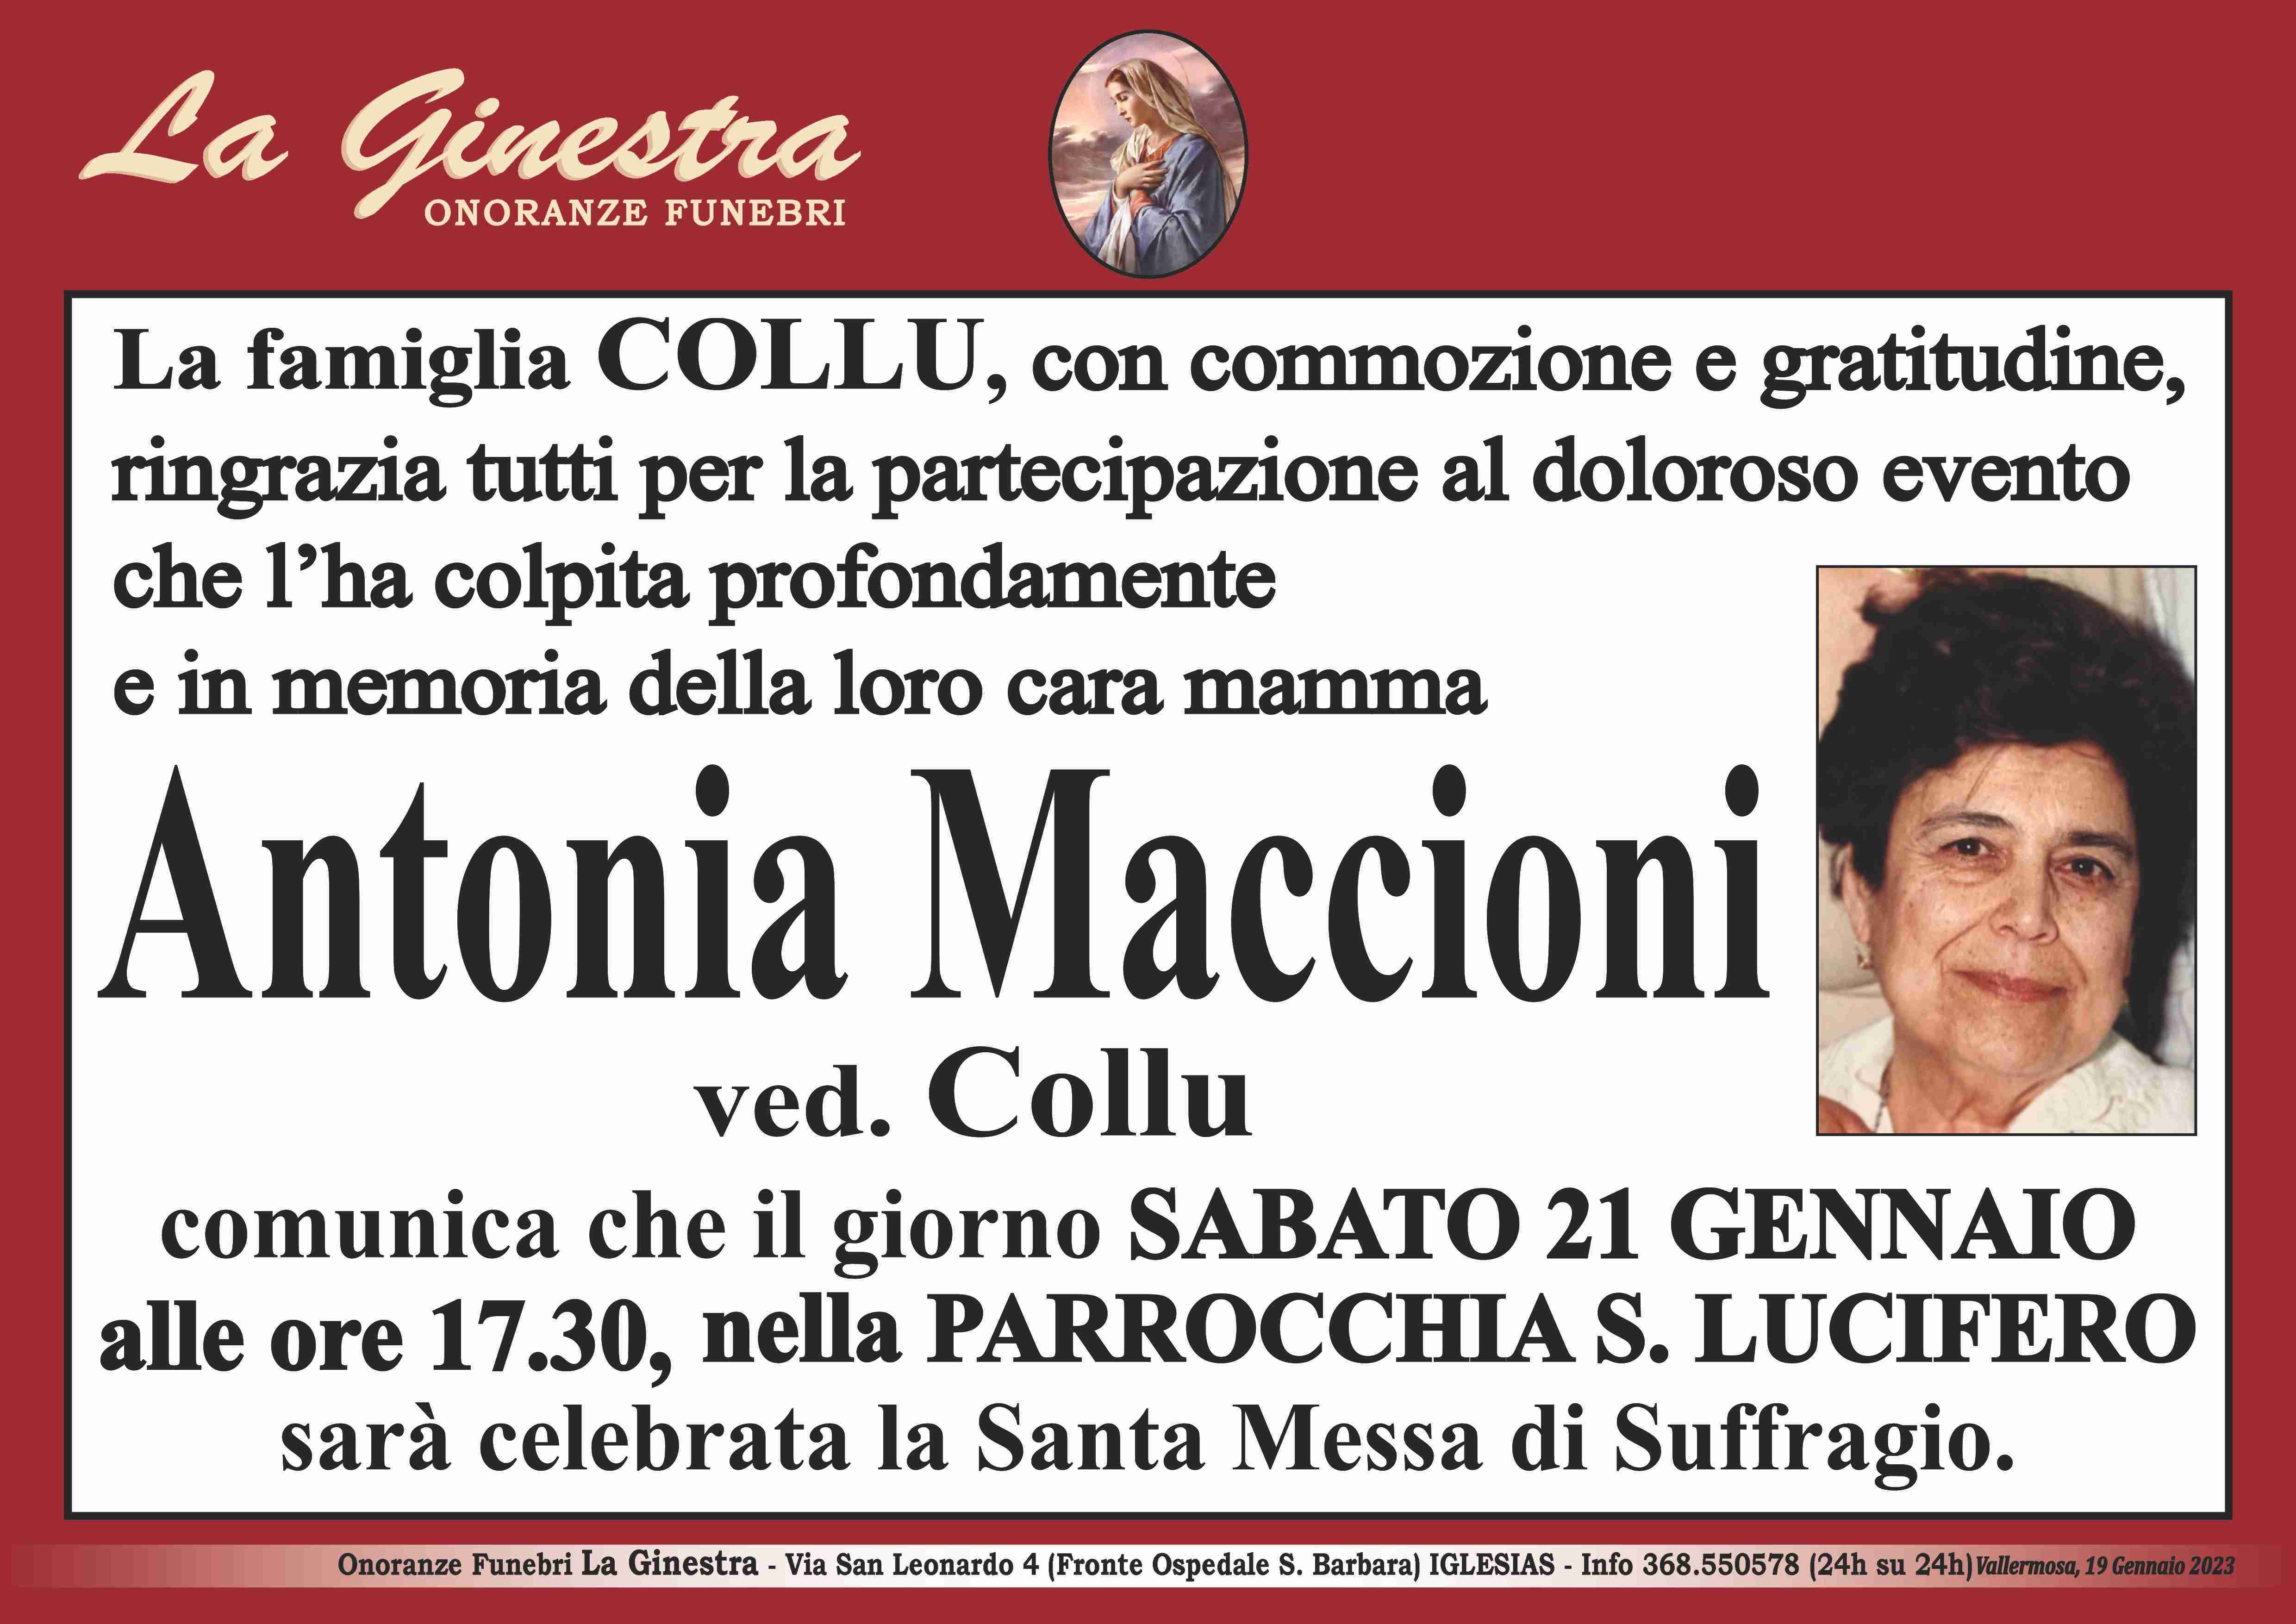 Antonia Maccioni